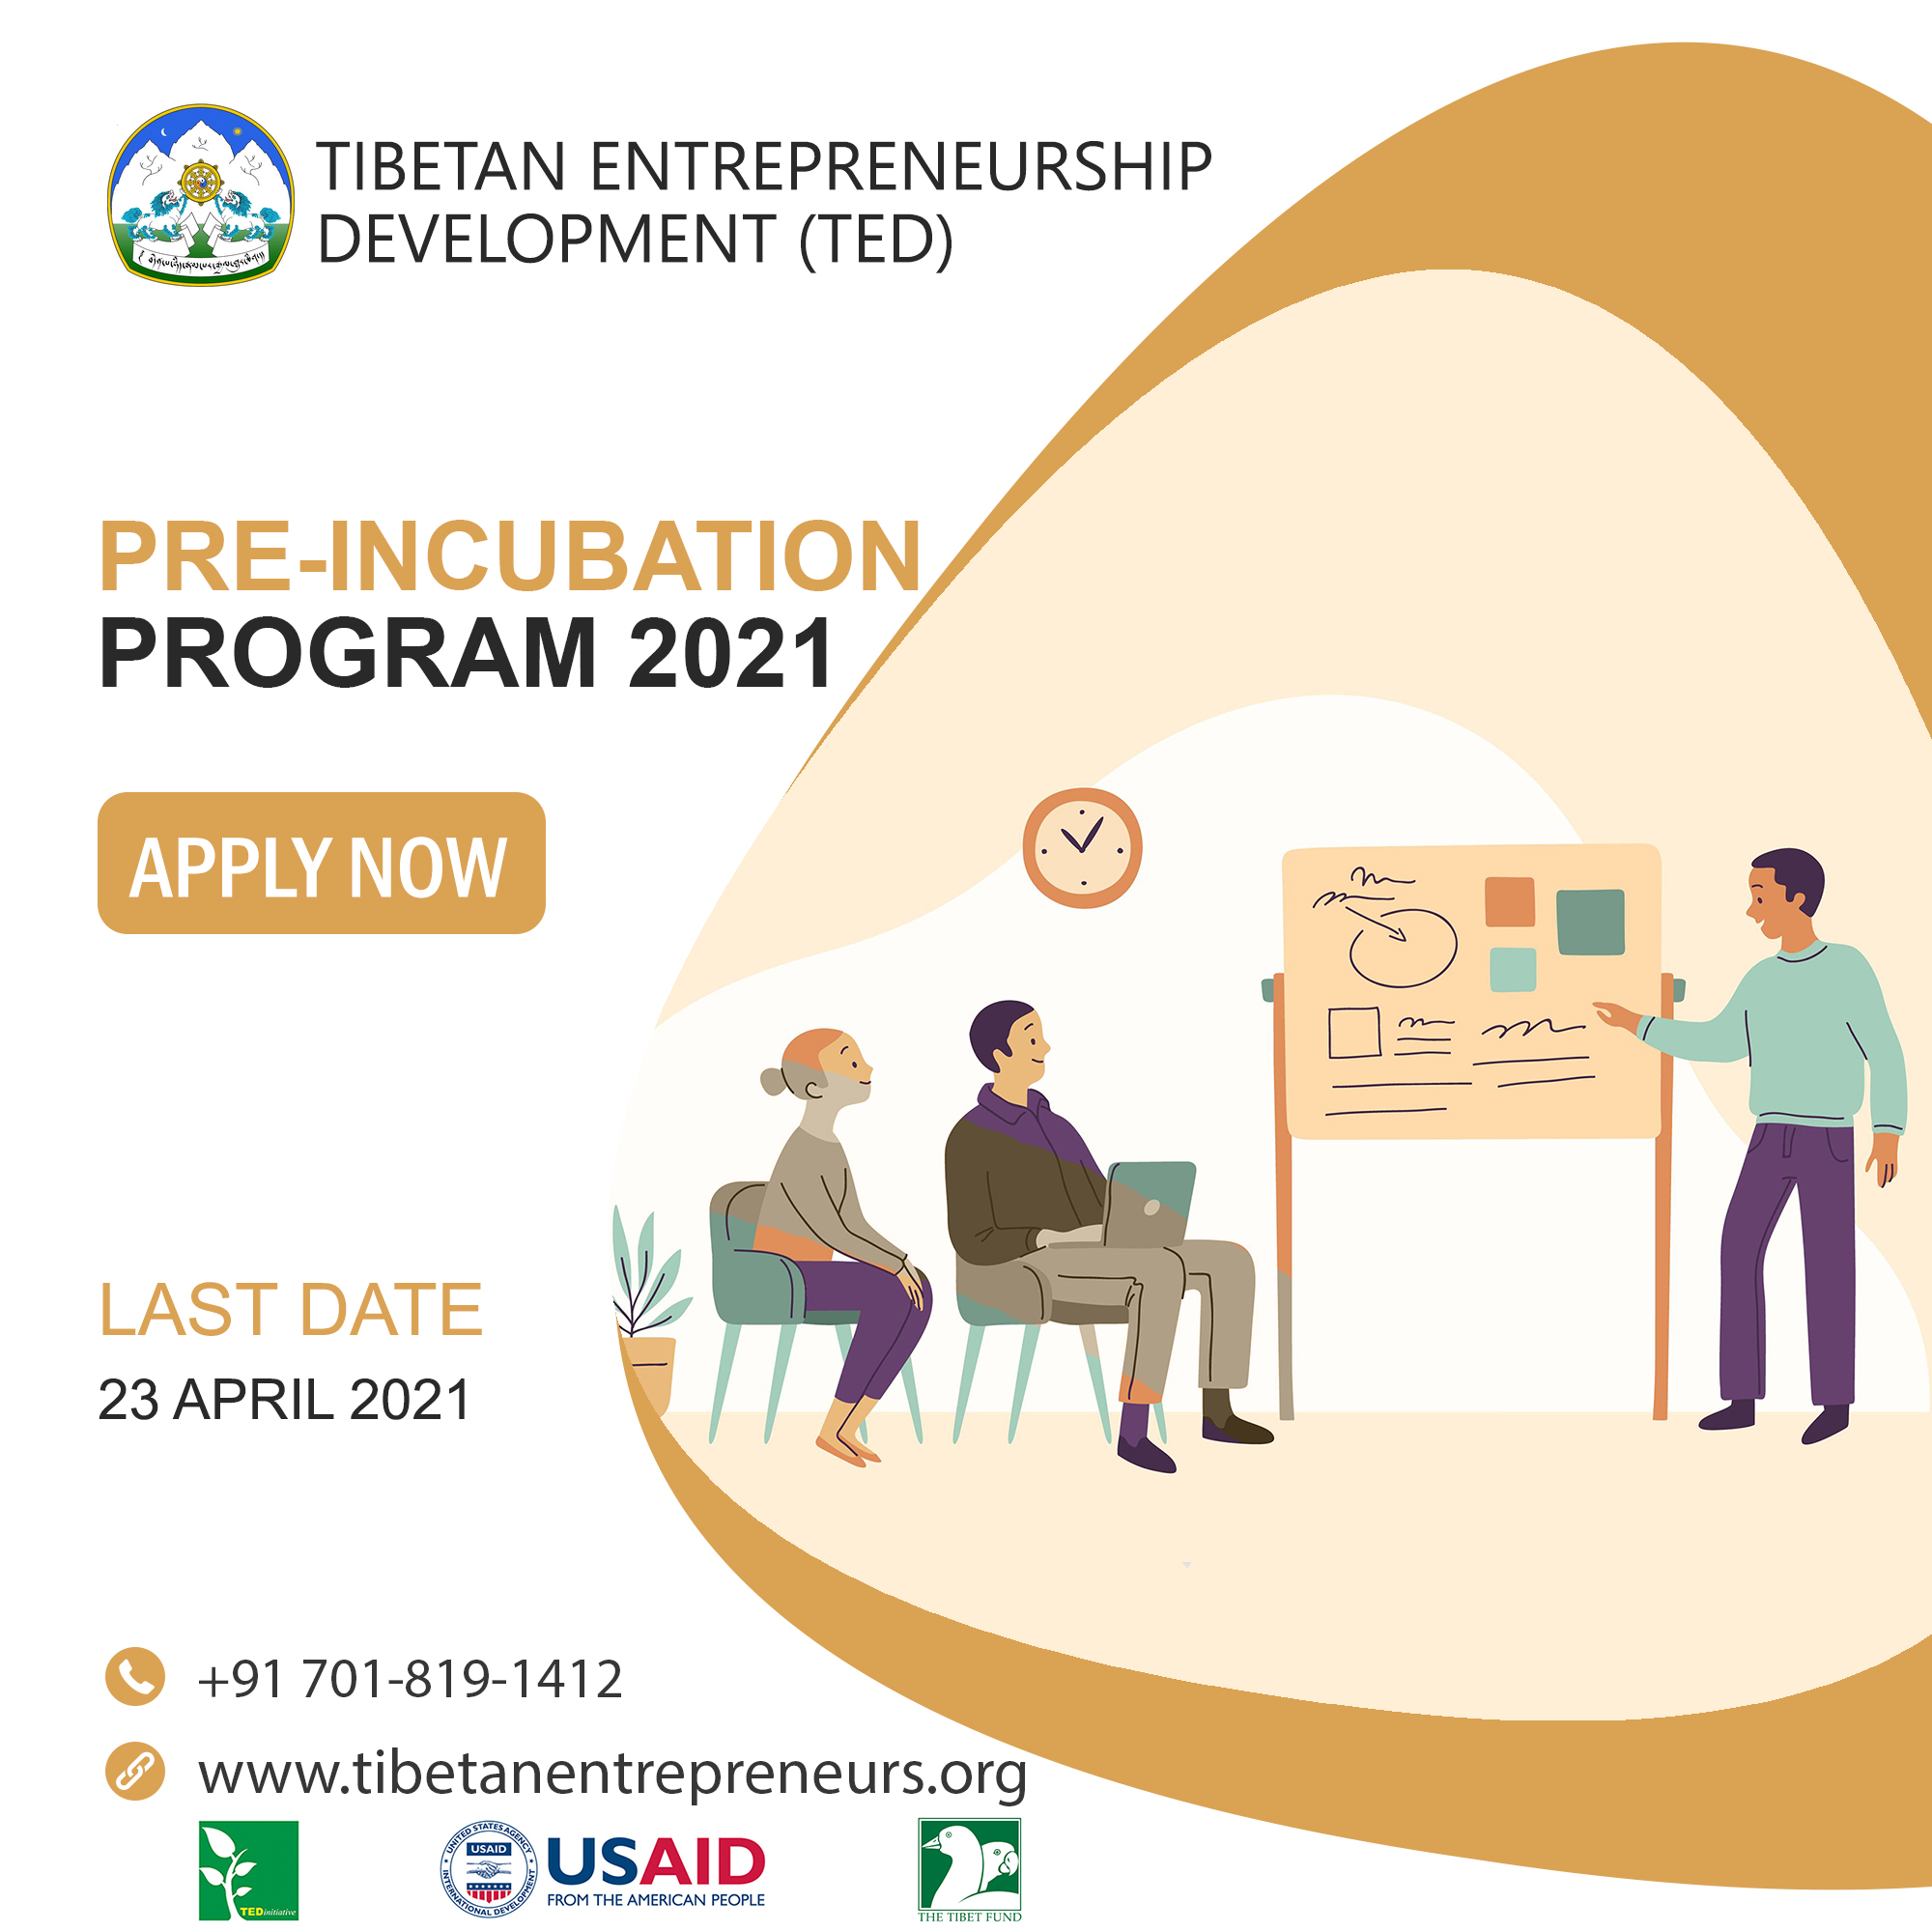 Tibetan Entrepreneurship Development (TED)’s Pre-Incubation program 2021